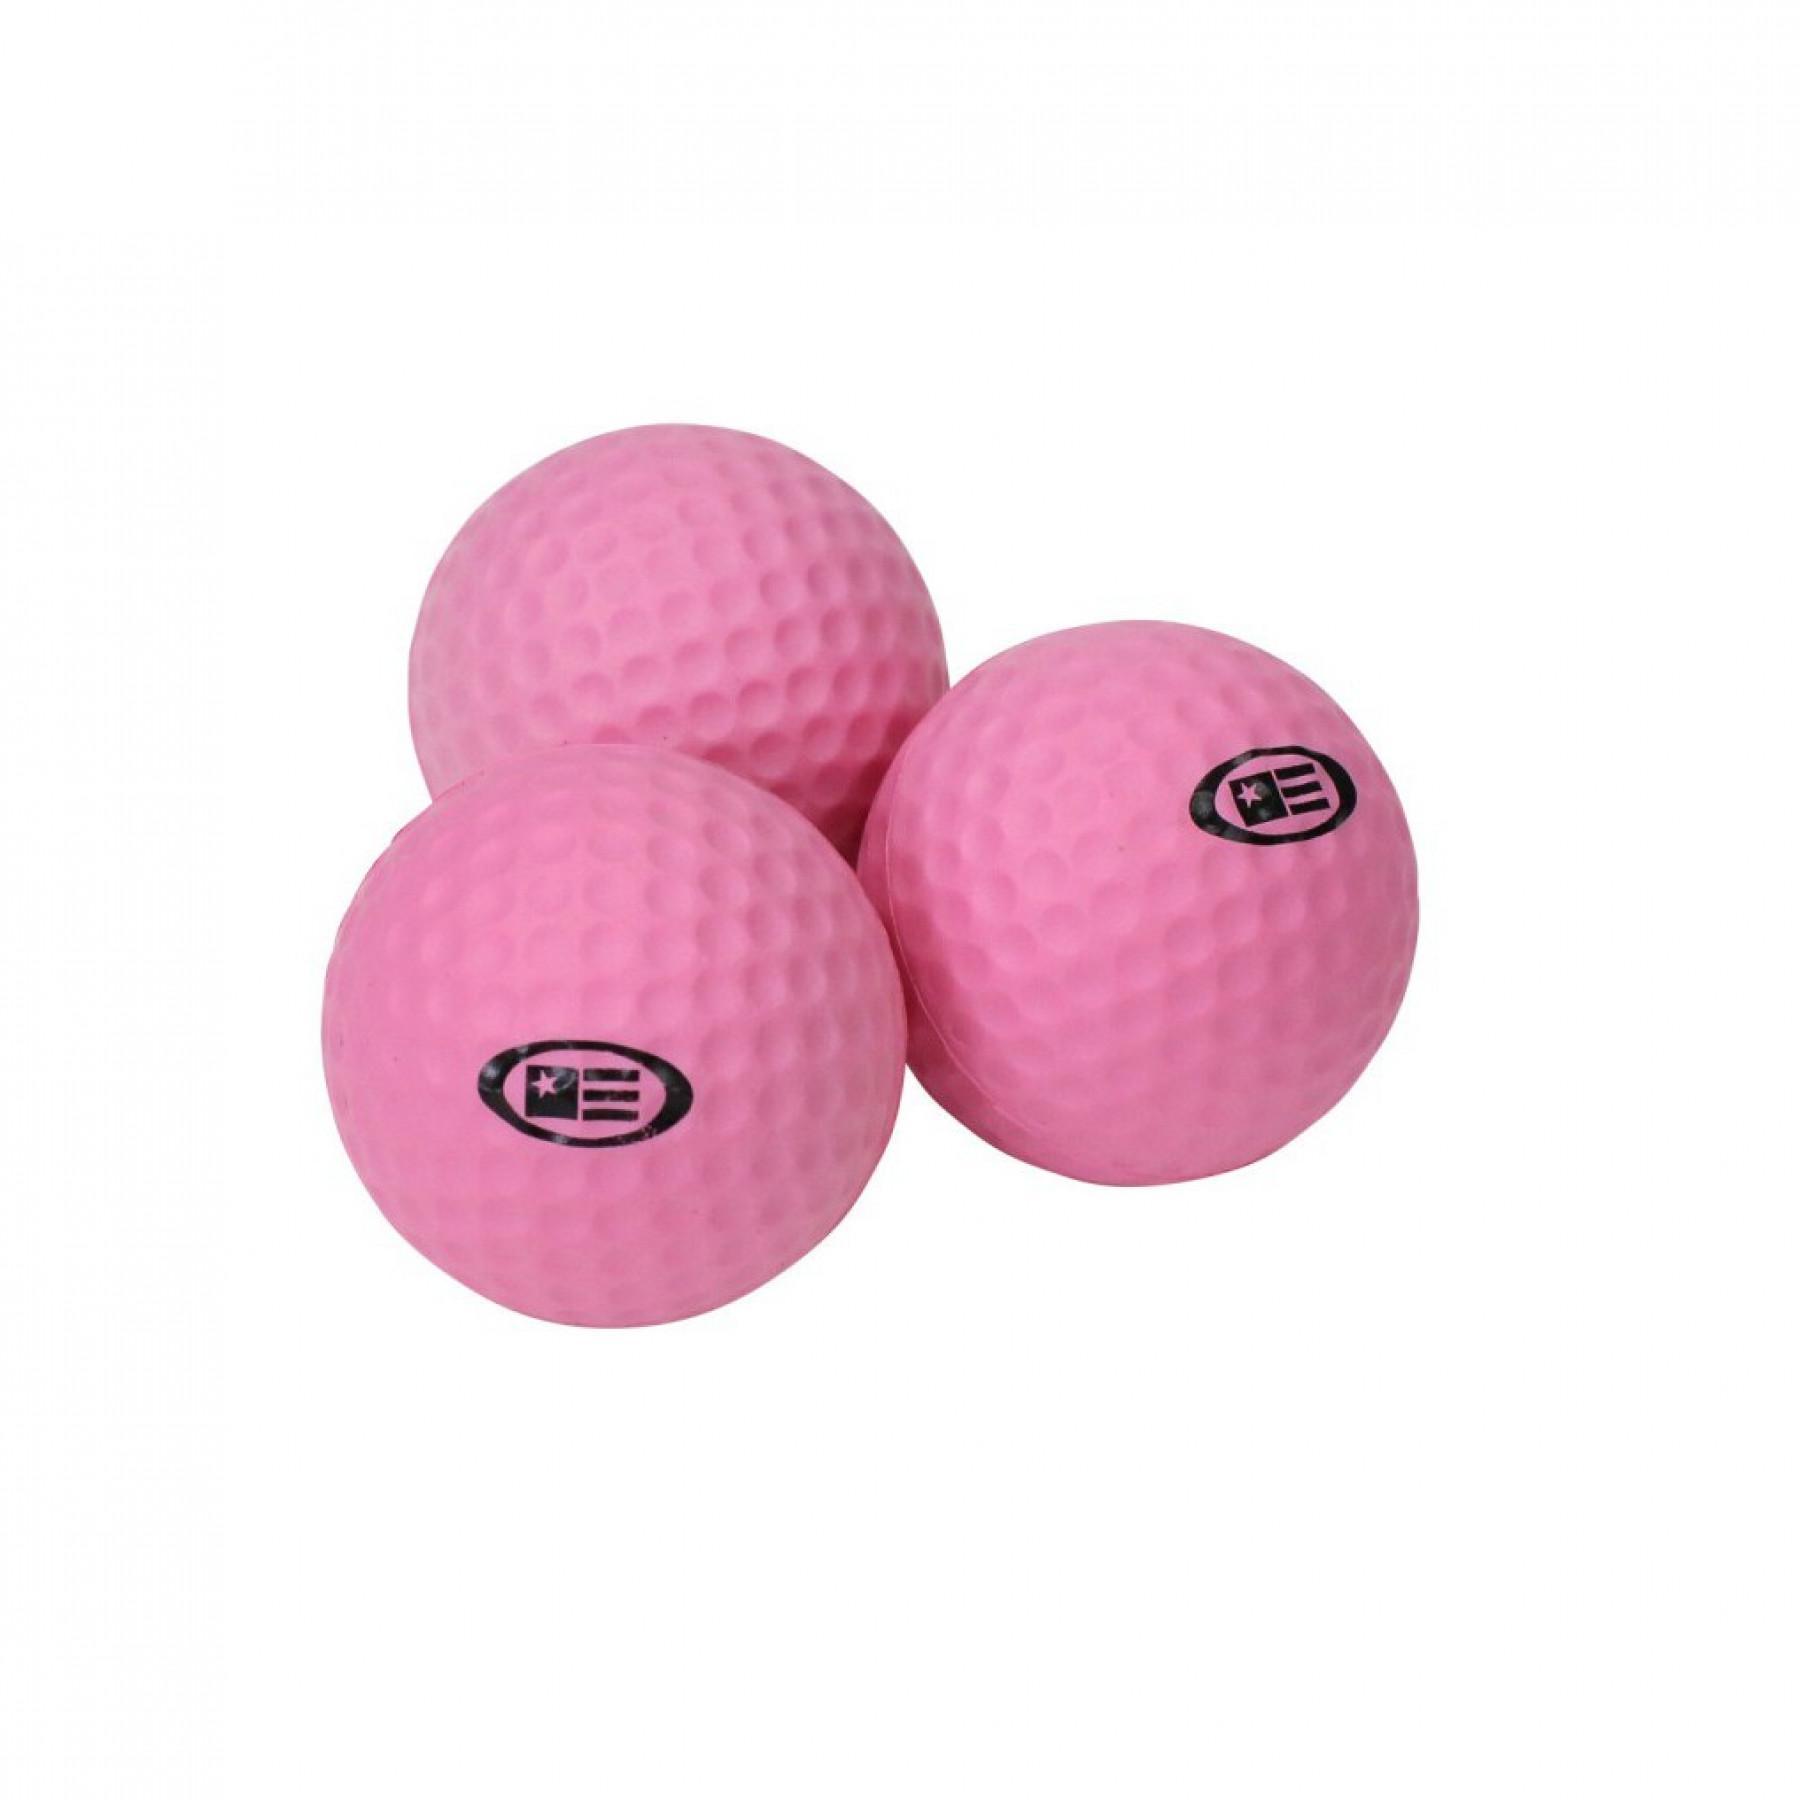 Pacote de 12 bolas de espuma U.S Kids Golf